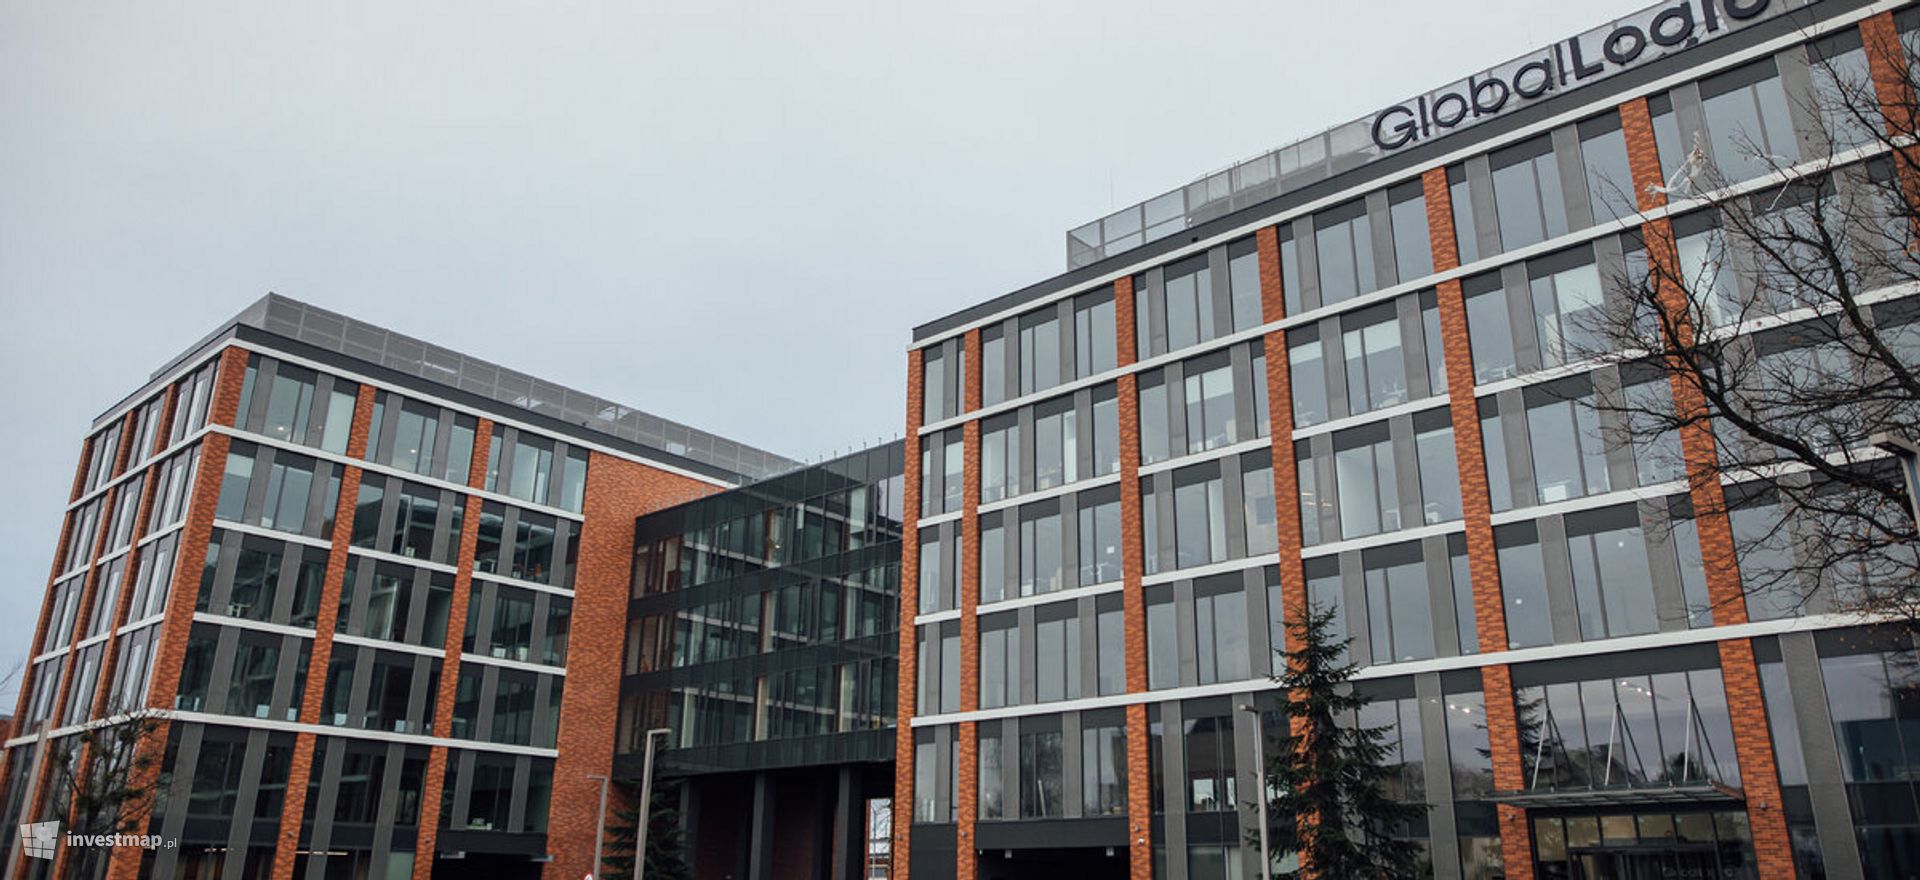 Amerykańska firma GlobalLogic ma nową siedzibę we Wrocławiu. Planuje zatrudnić kolejnych 500 specjalistów IT